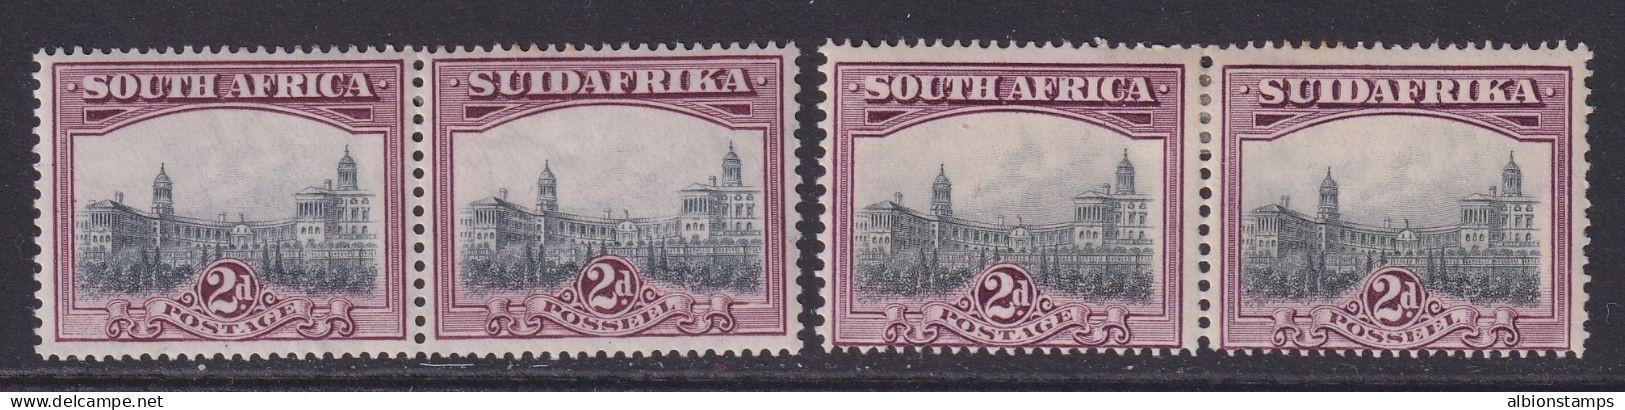 South Africa, Scott 26, 26c (SG 34, 34b), MHR - Unused Stamps